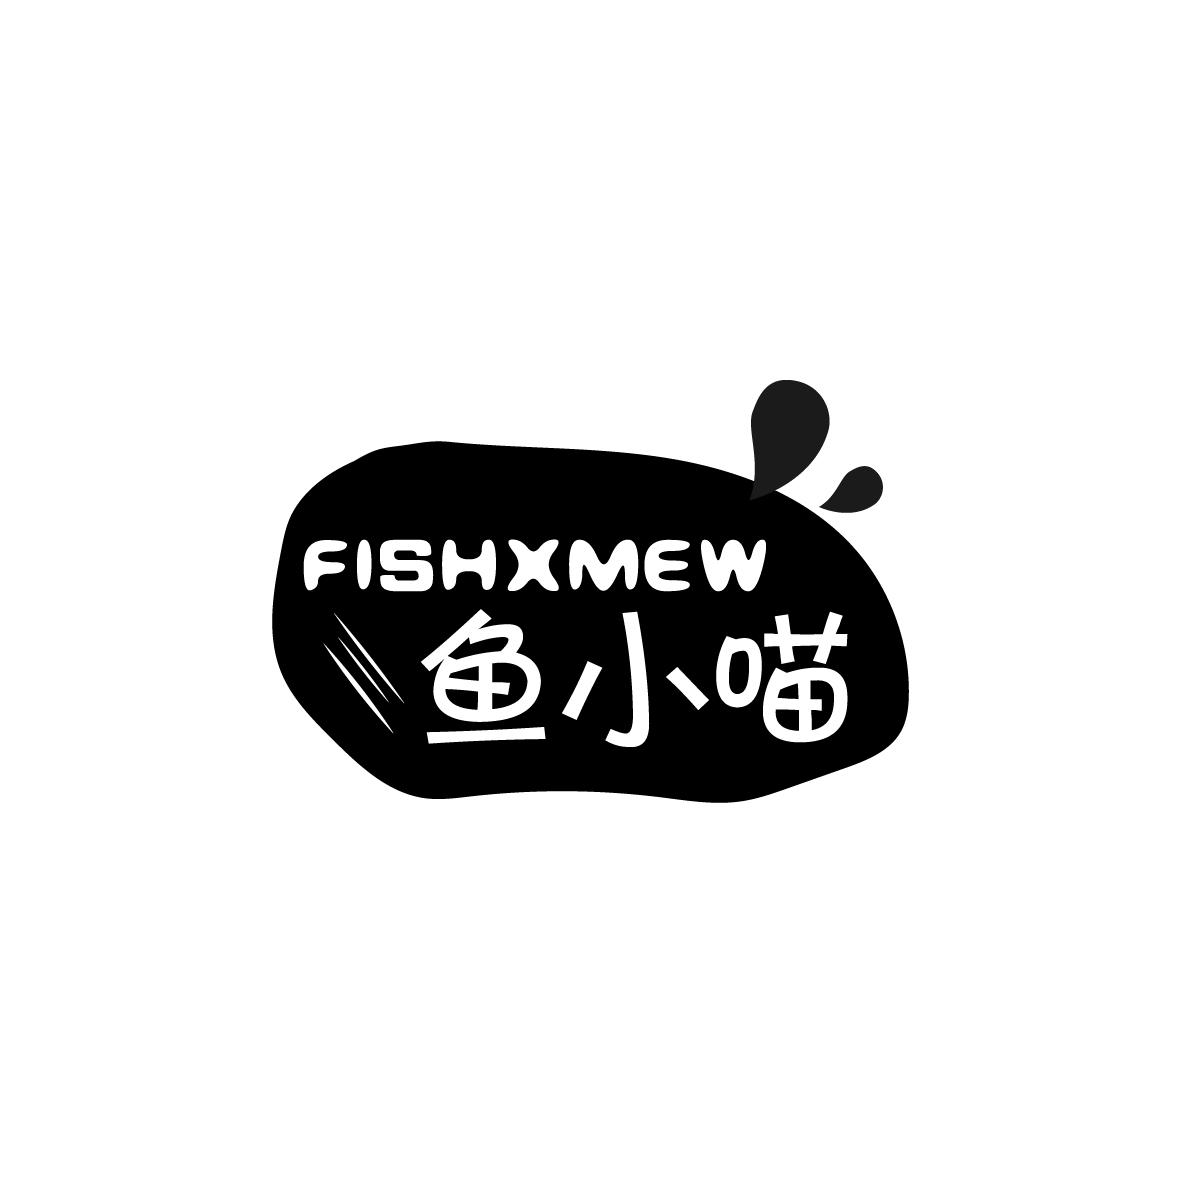 鱼小喵FISHXMEW